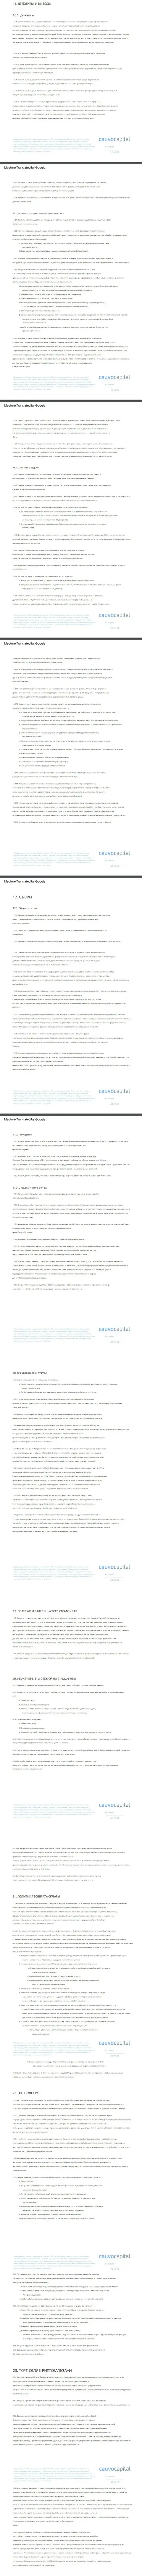 3 часть клиентского соглашения форекс-дилинговой компании CauvoCapital Com